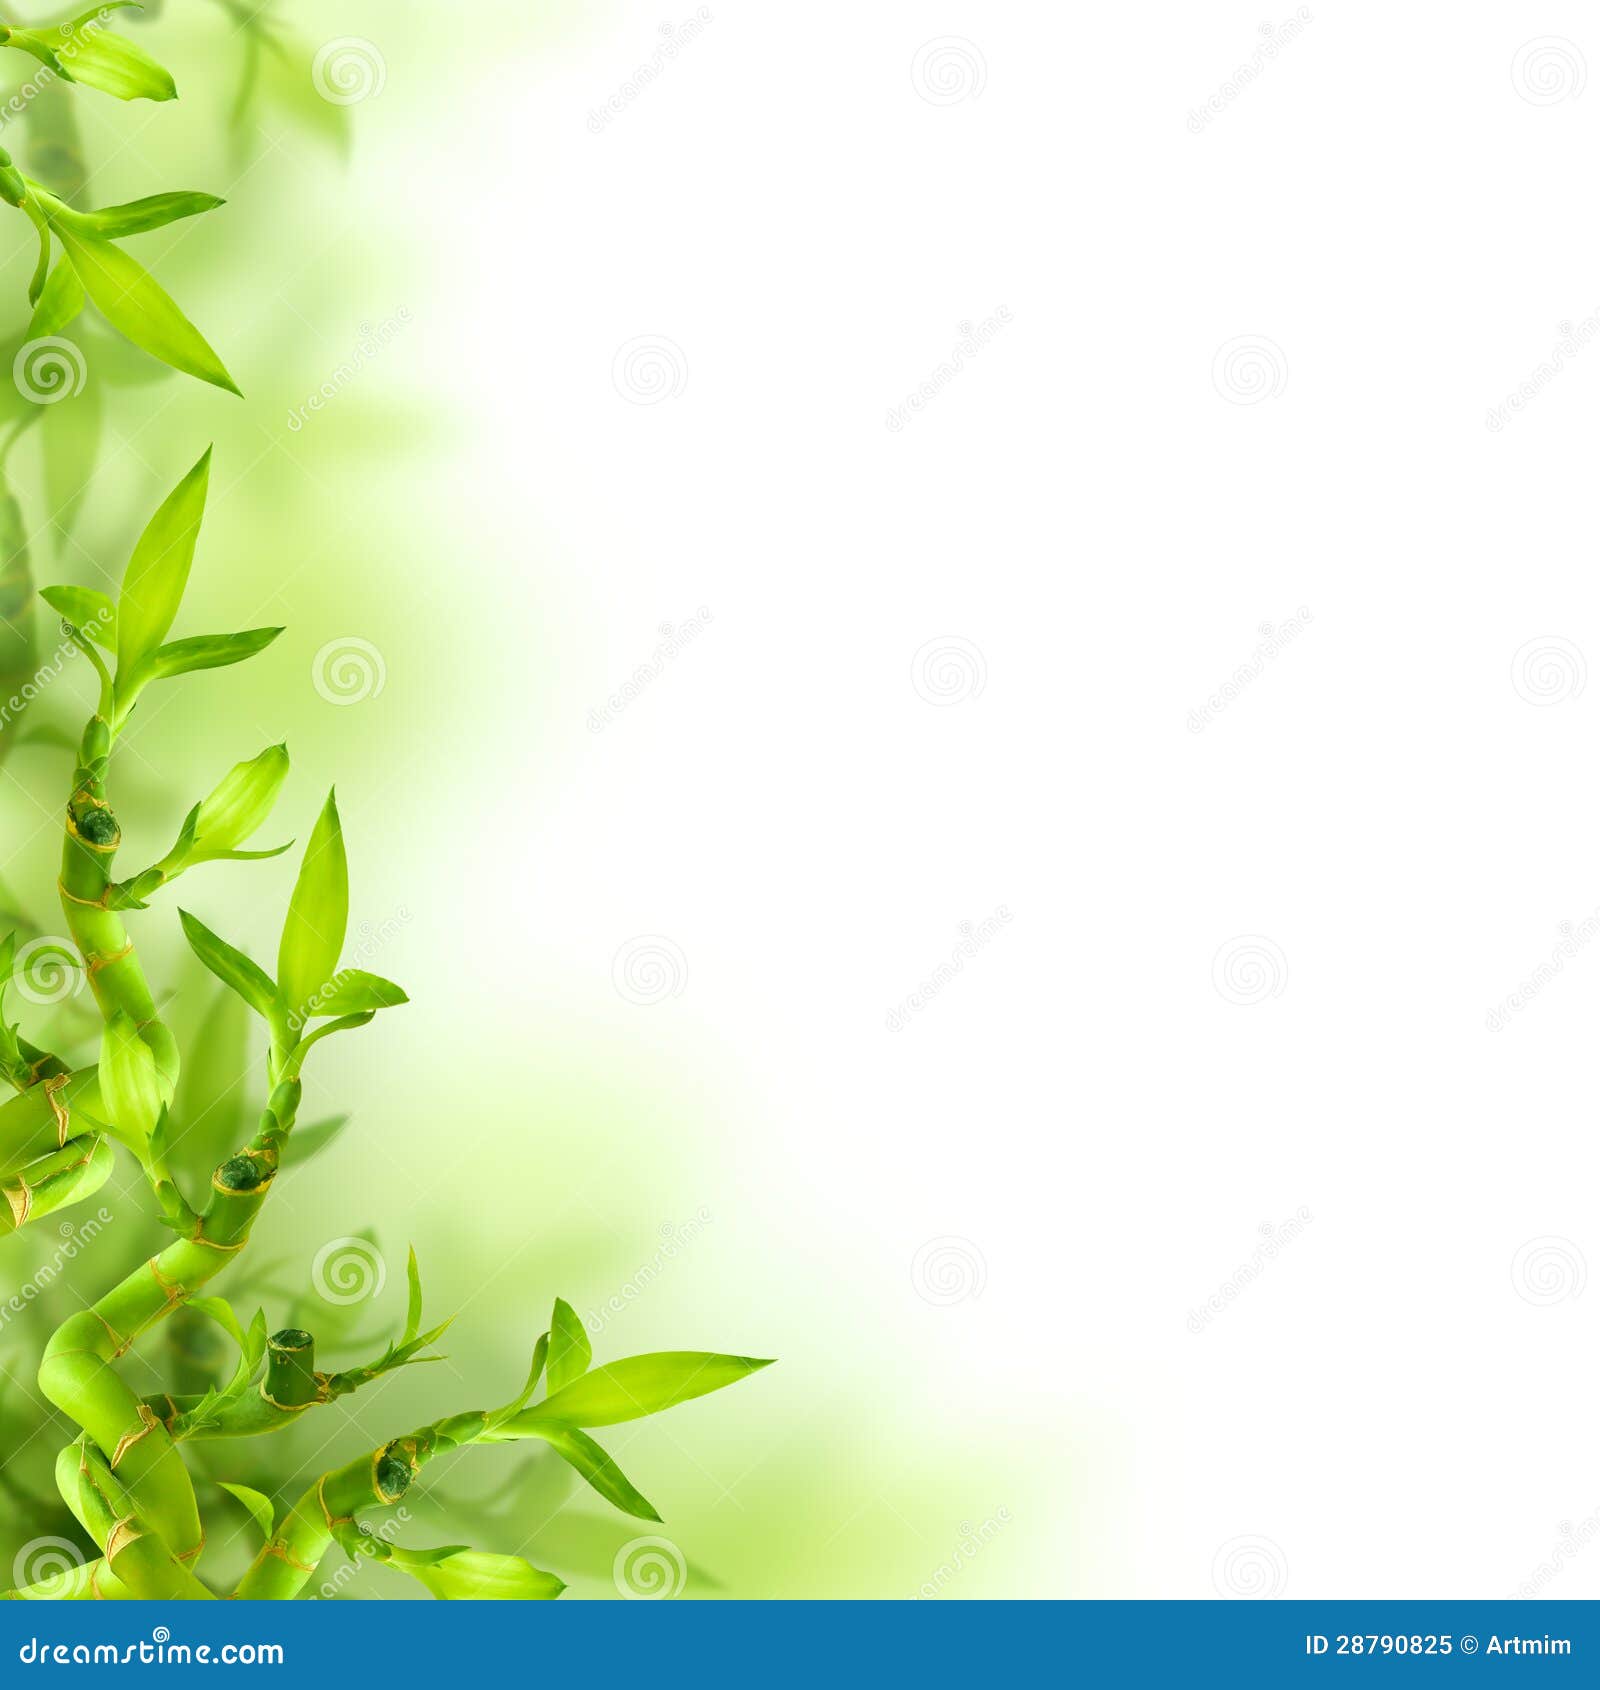 Tre và lá xanh làm cho không gian trở nên gần gũi và thân thiện hơn. Hãy xem qua hình ảnh về các sản phẩm được làm từ tre và lá xanh, chắc chắn bạn sẽ tìm thấy những chiếc chậu tre đáng yêu hoặc những bông hoa lá xanh tươi tắn.